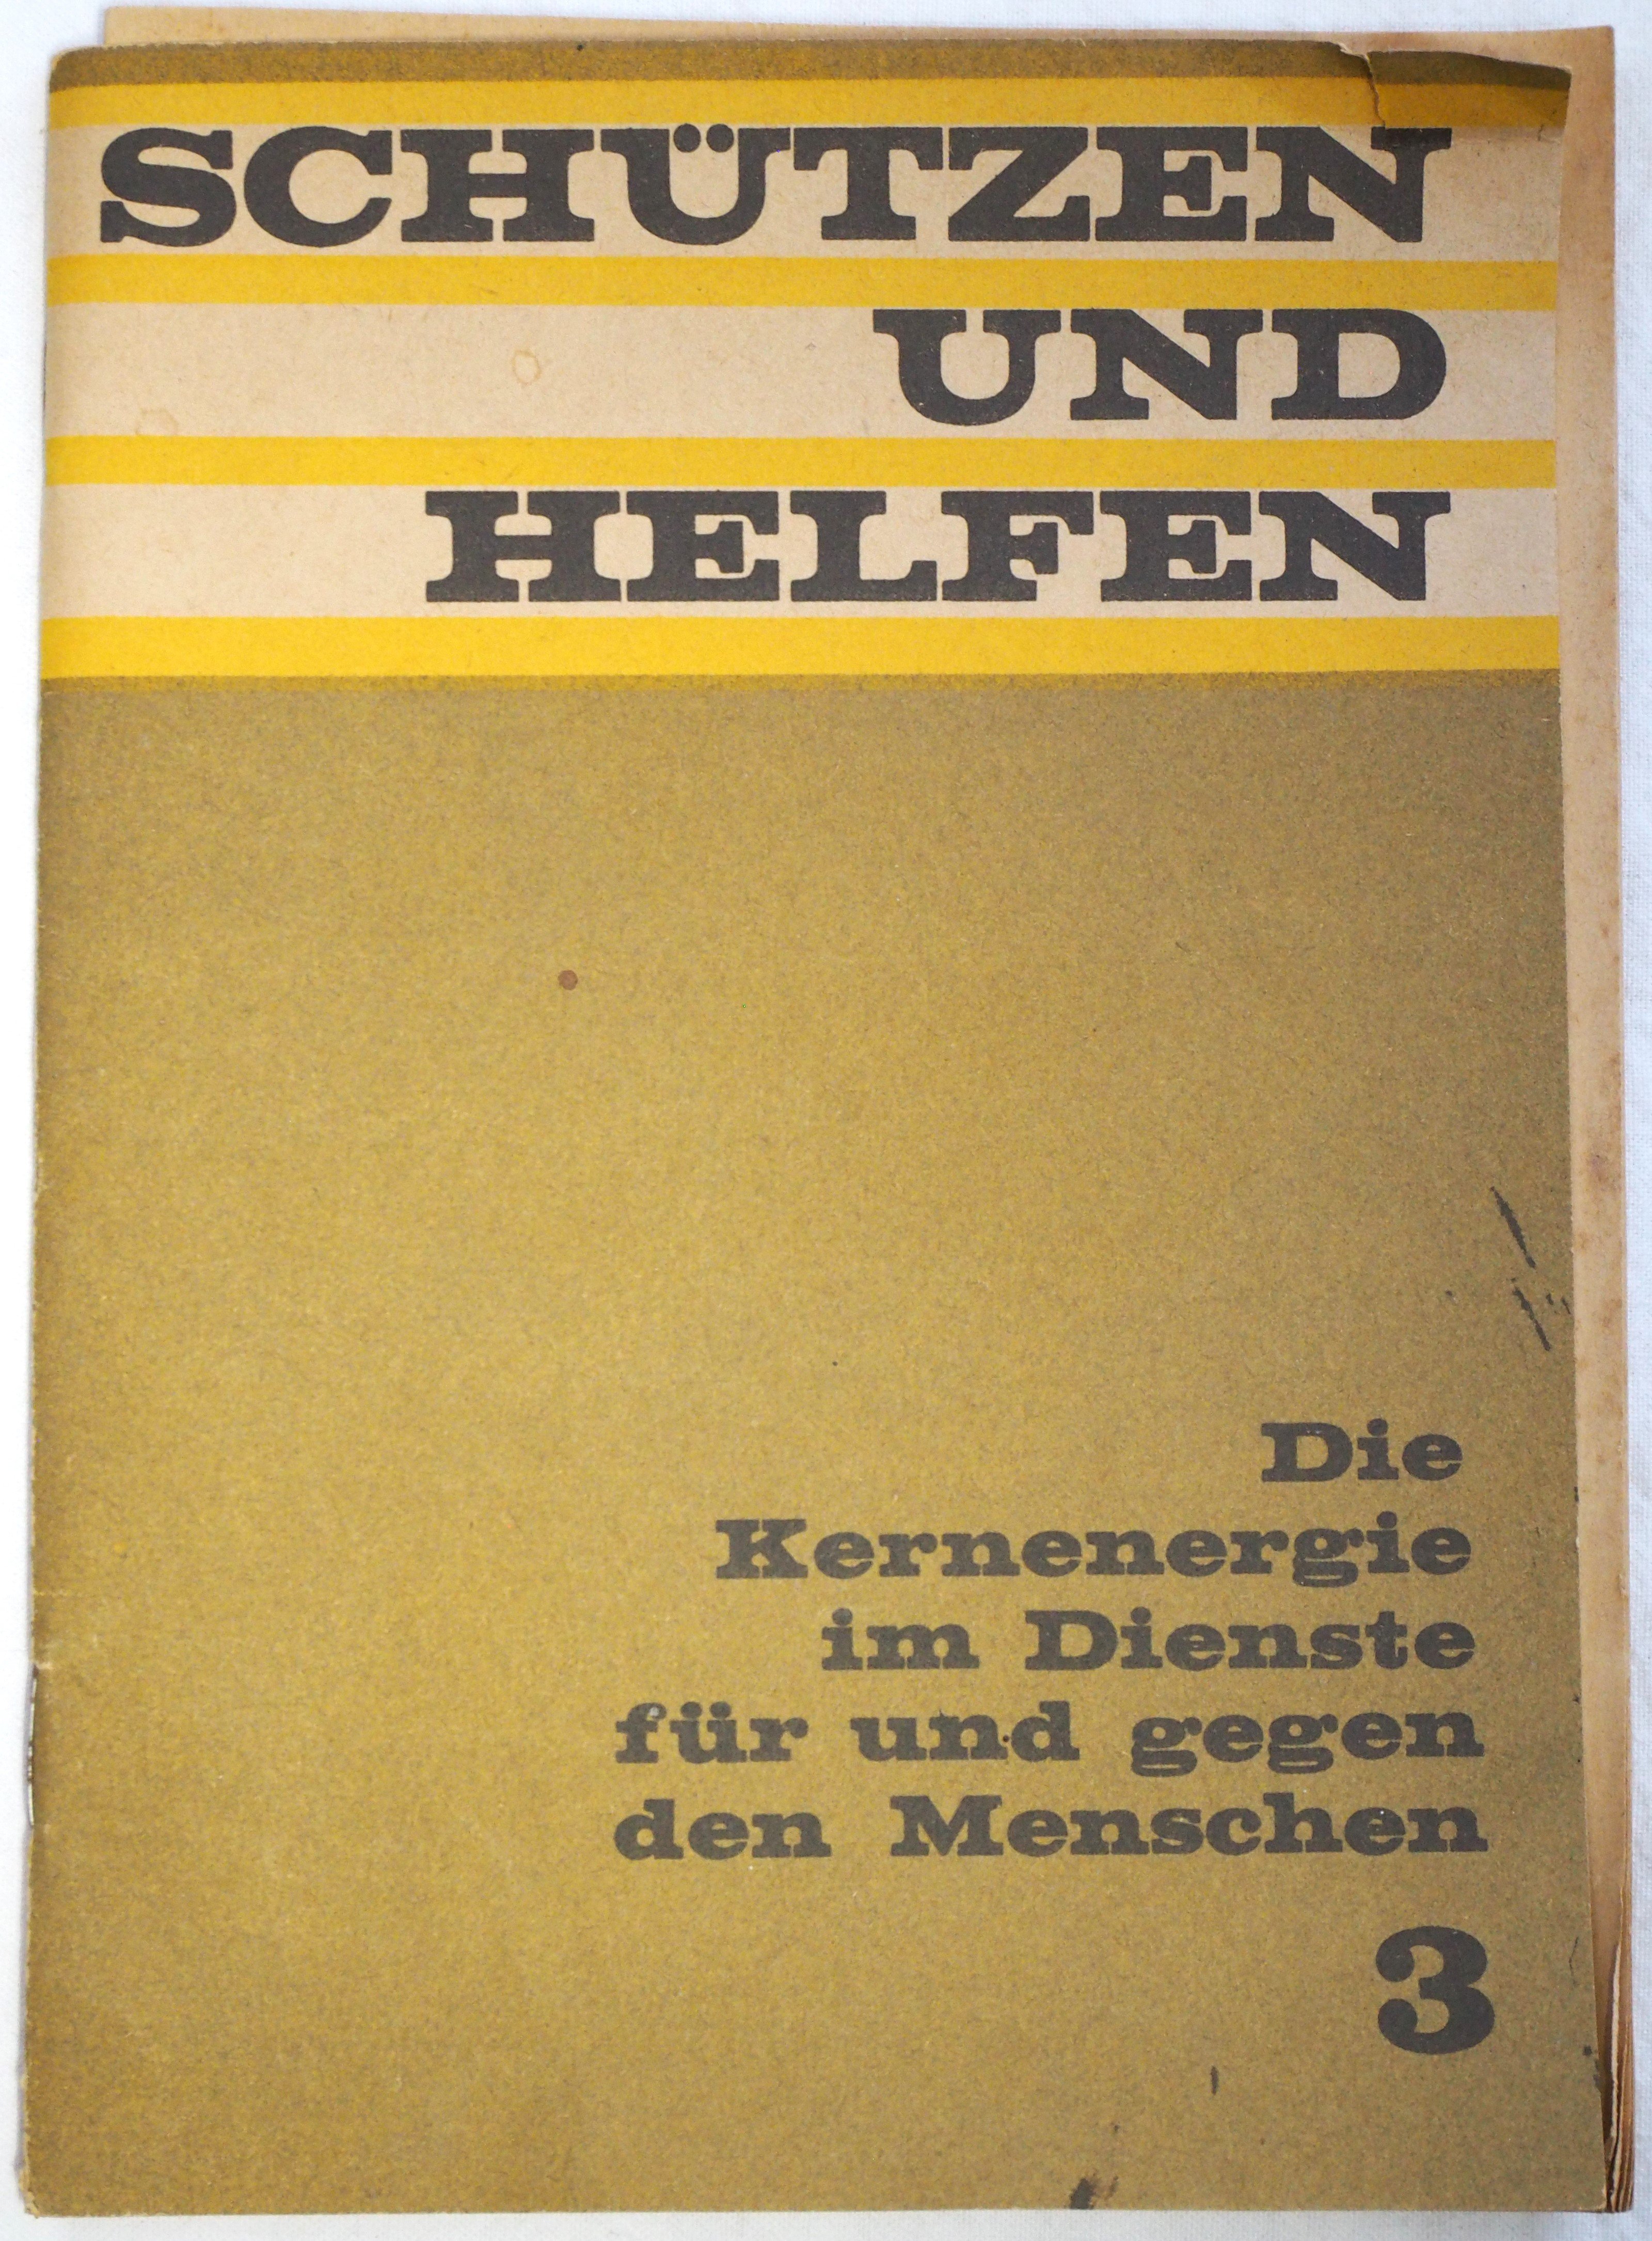 Broschüre "Schützen und Helfen. Die Kernenergie im Dienste für und gegen den Menschen" 3 (Februar 1972) (DDR Geschichtsmuseum im Dokumentationszentrum Perleberg CC BY-SA)